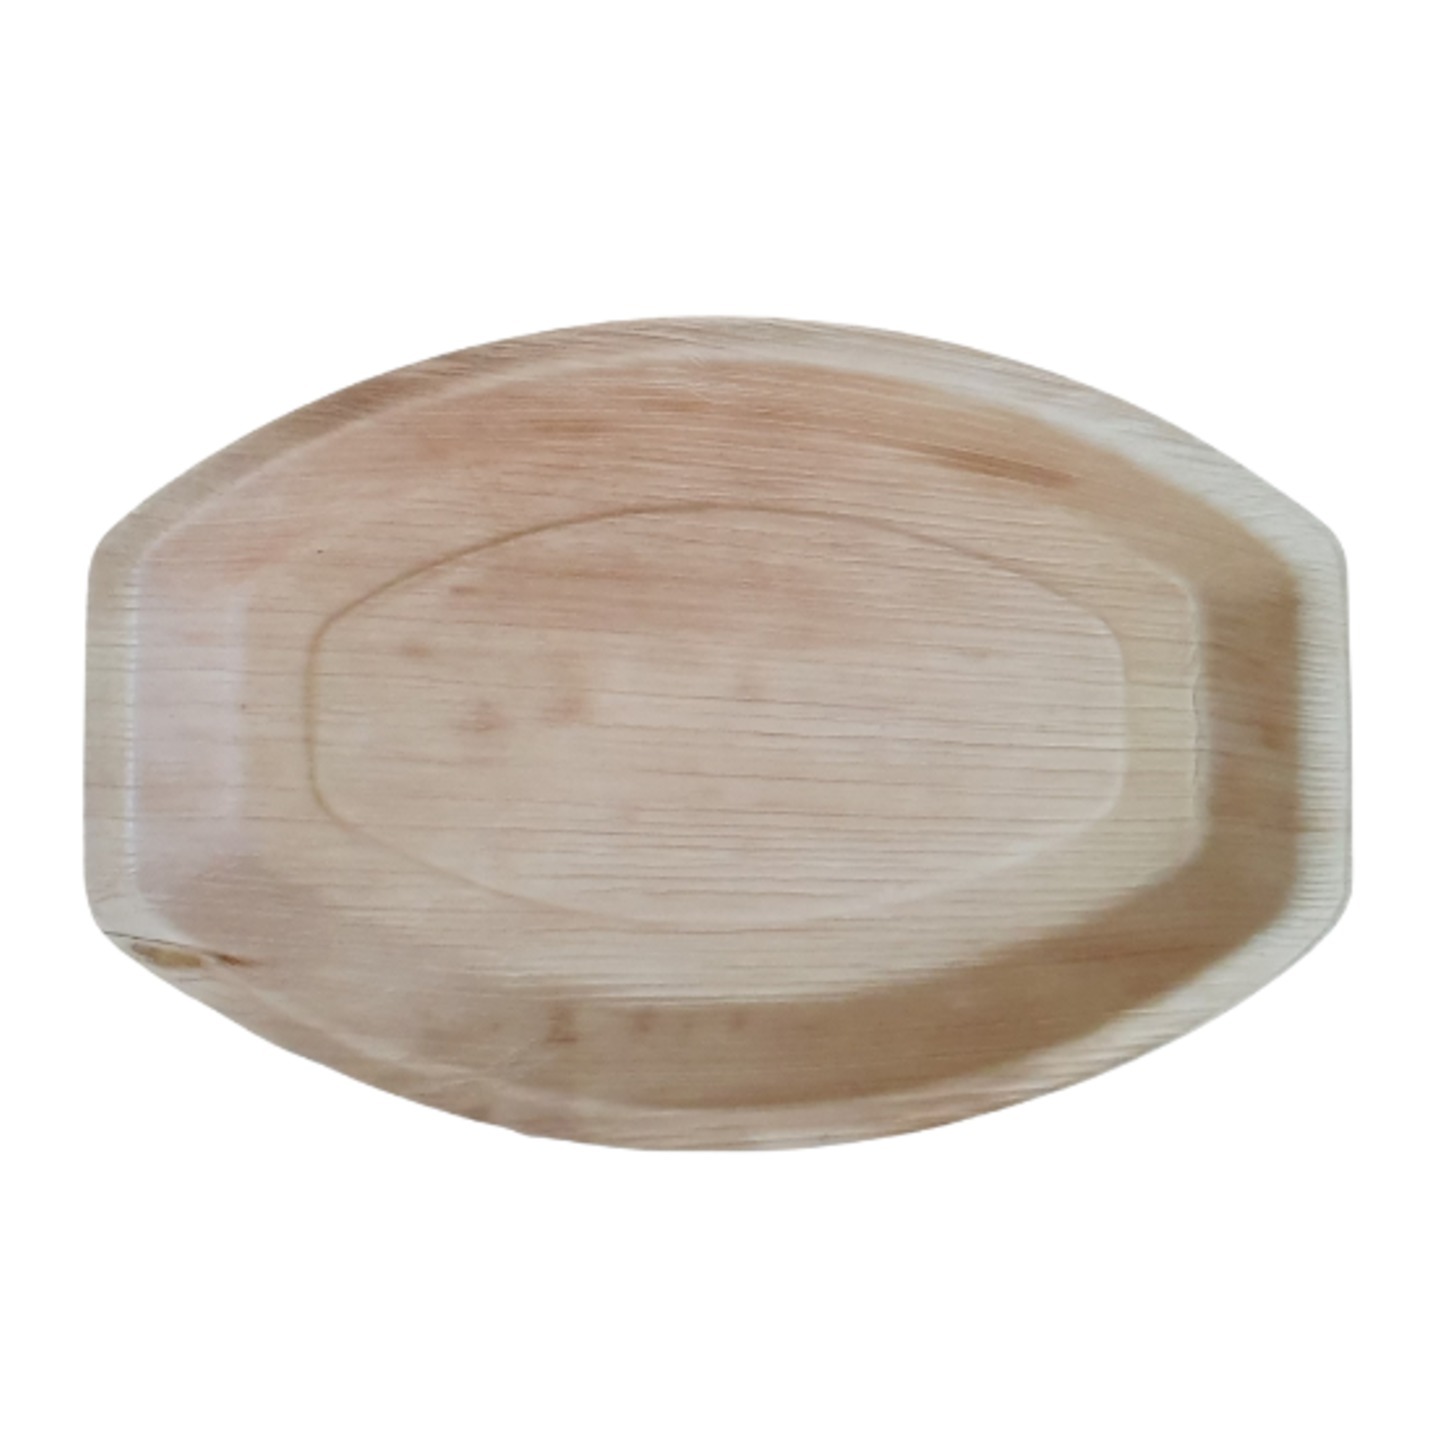 Oval Sharing Platter Medium